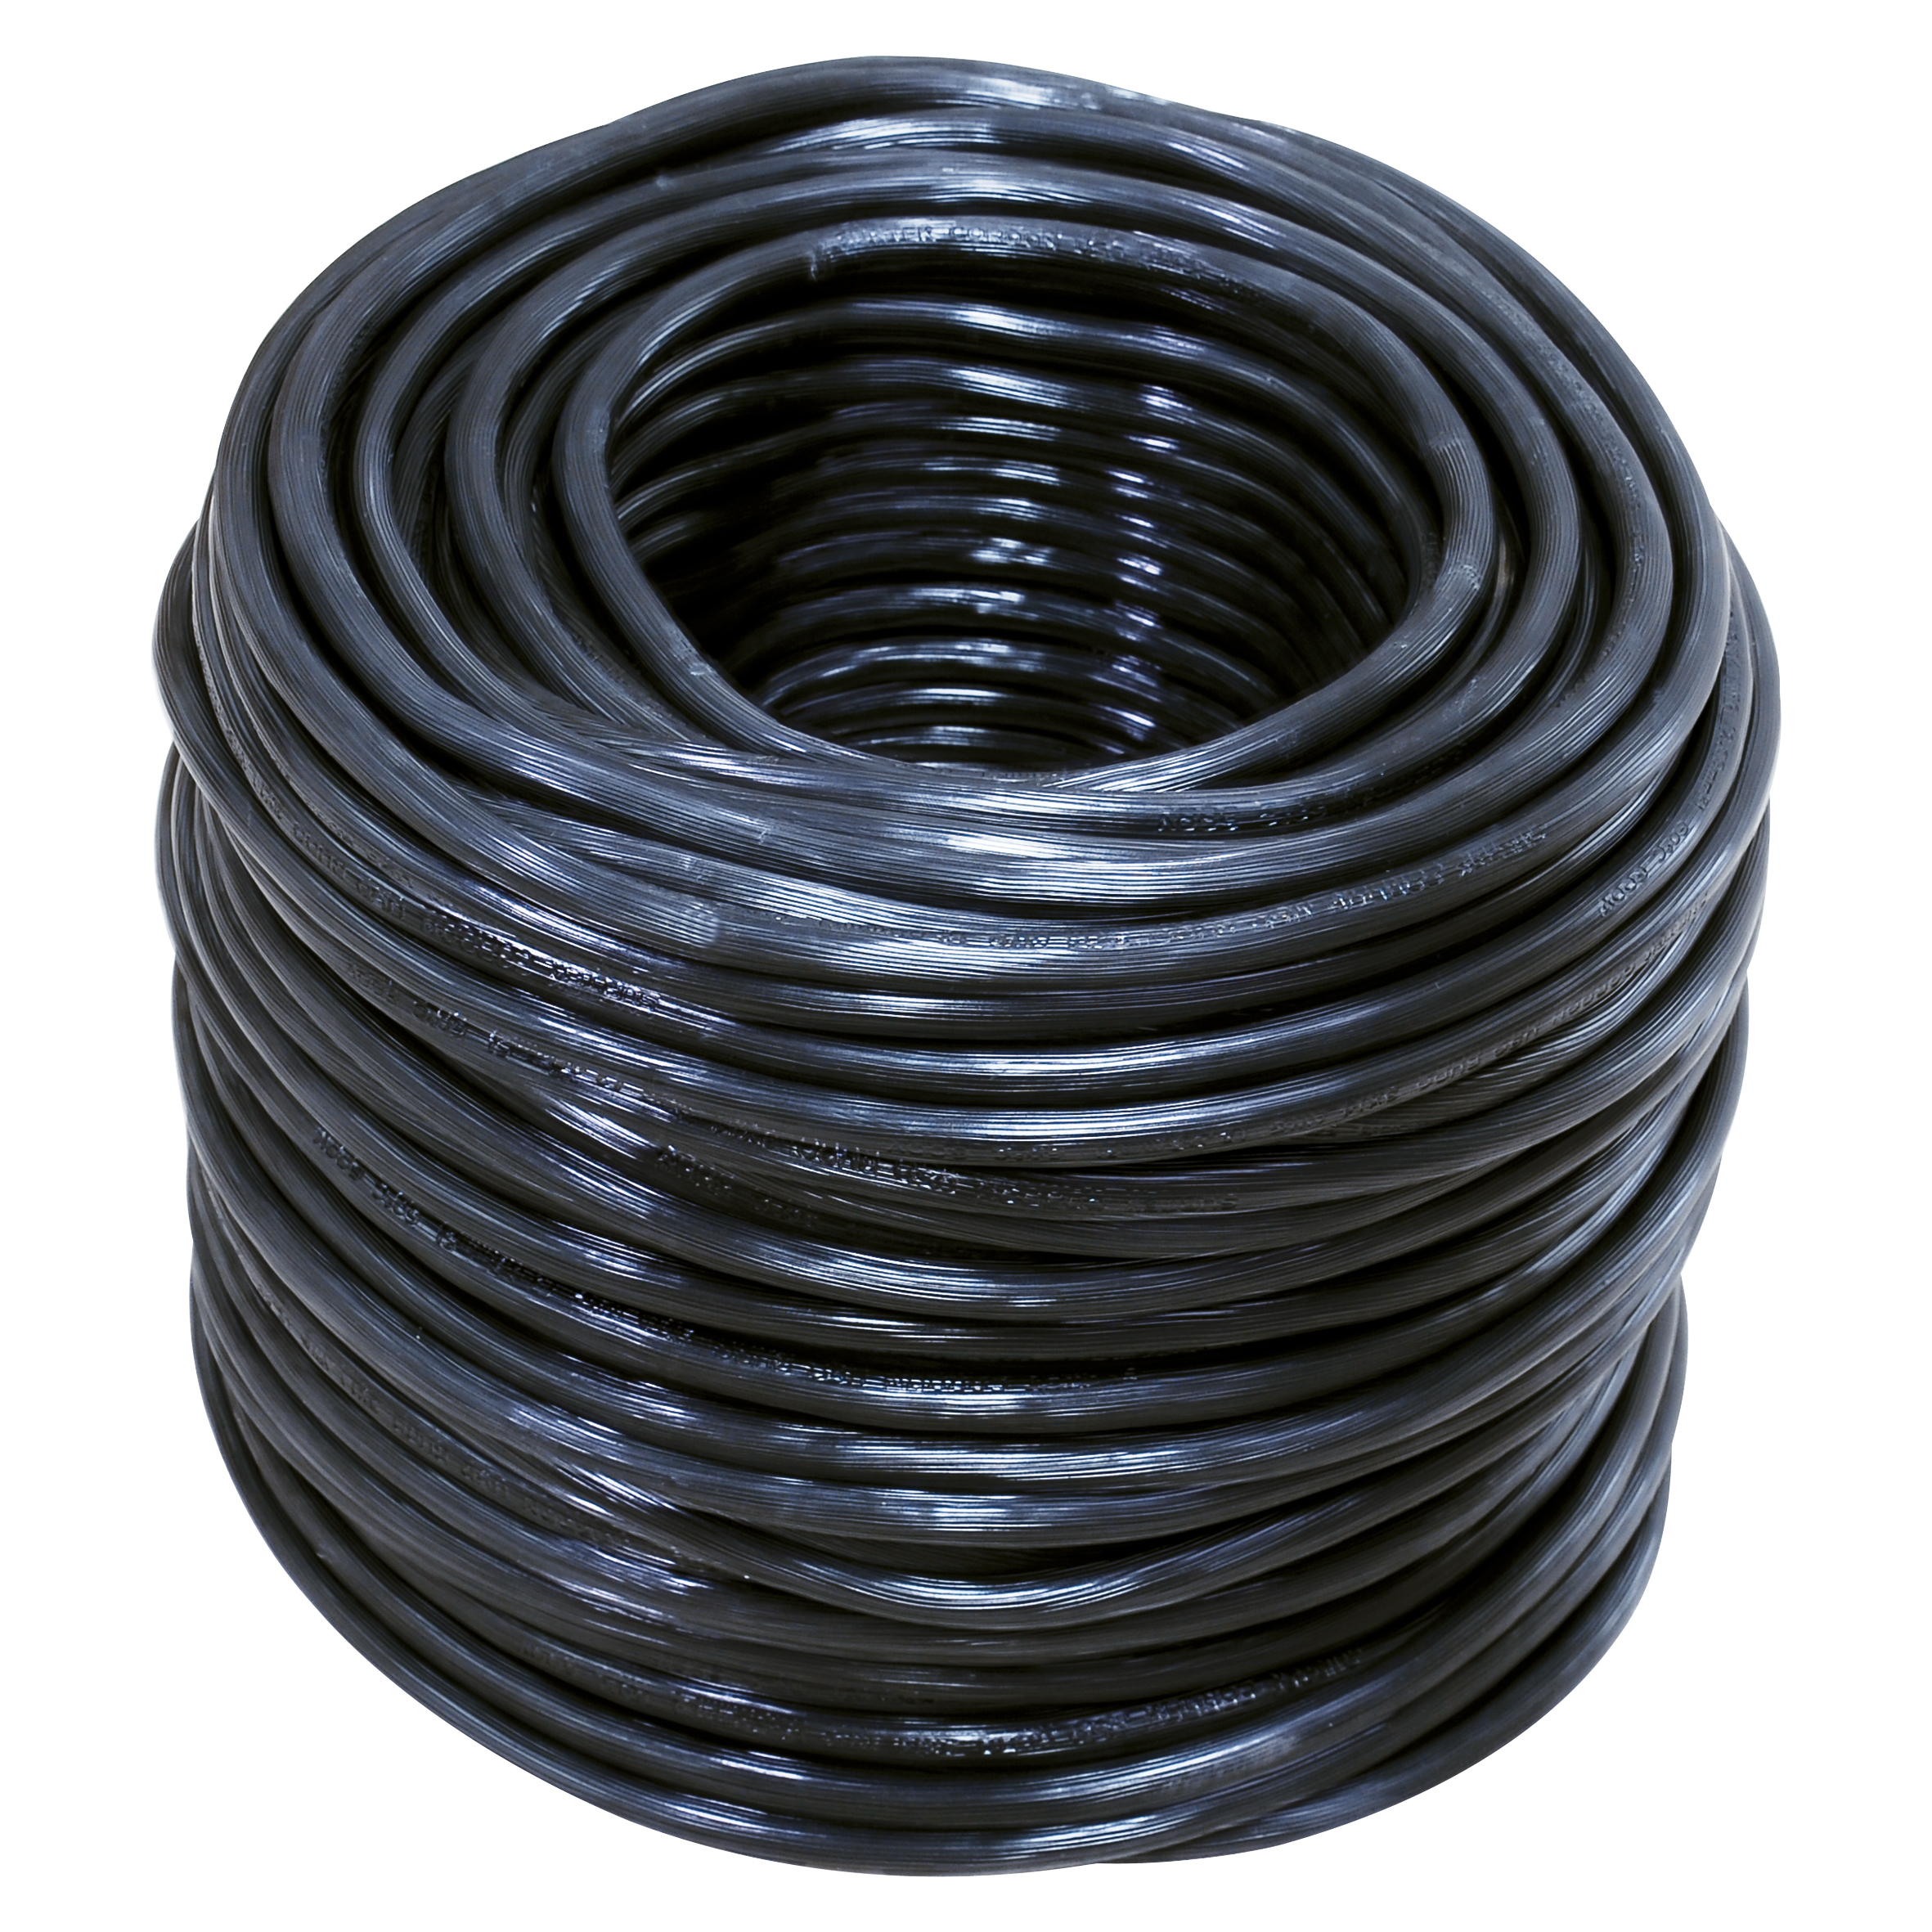 Cable eléctrico uso rudo Cal. 3 x 14 100m blanco y negro - Ferrecompras 